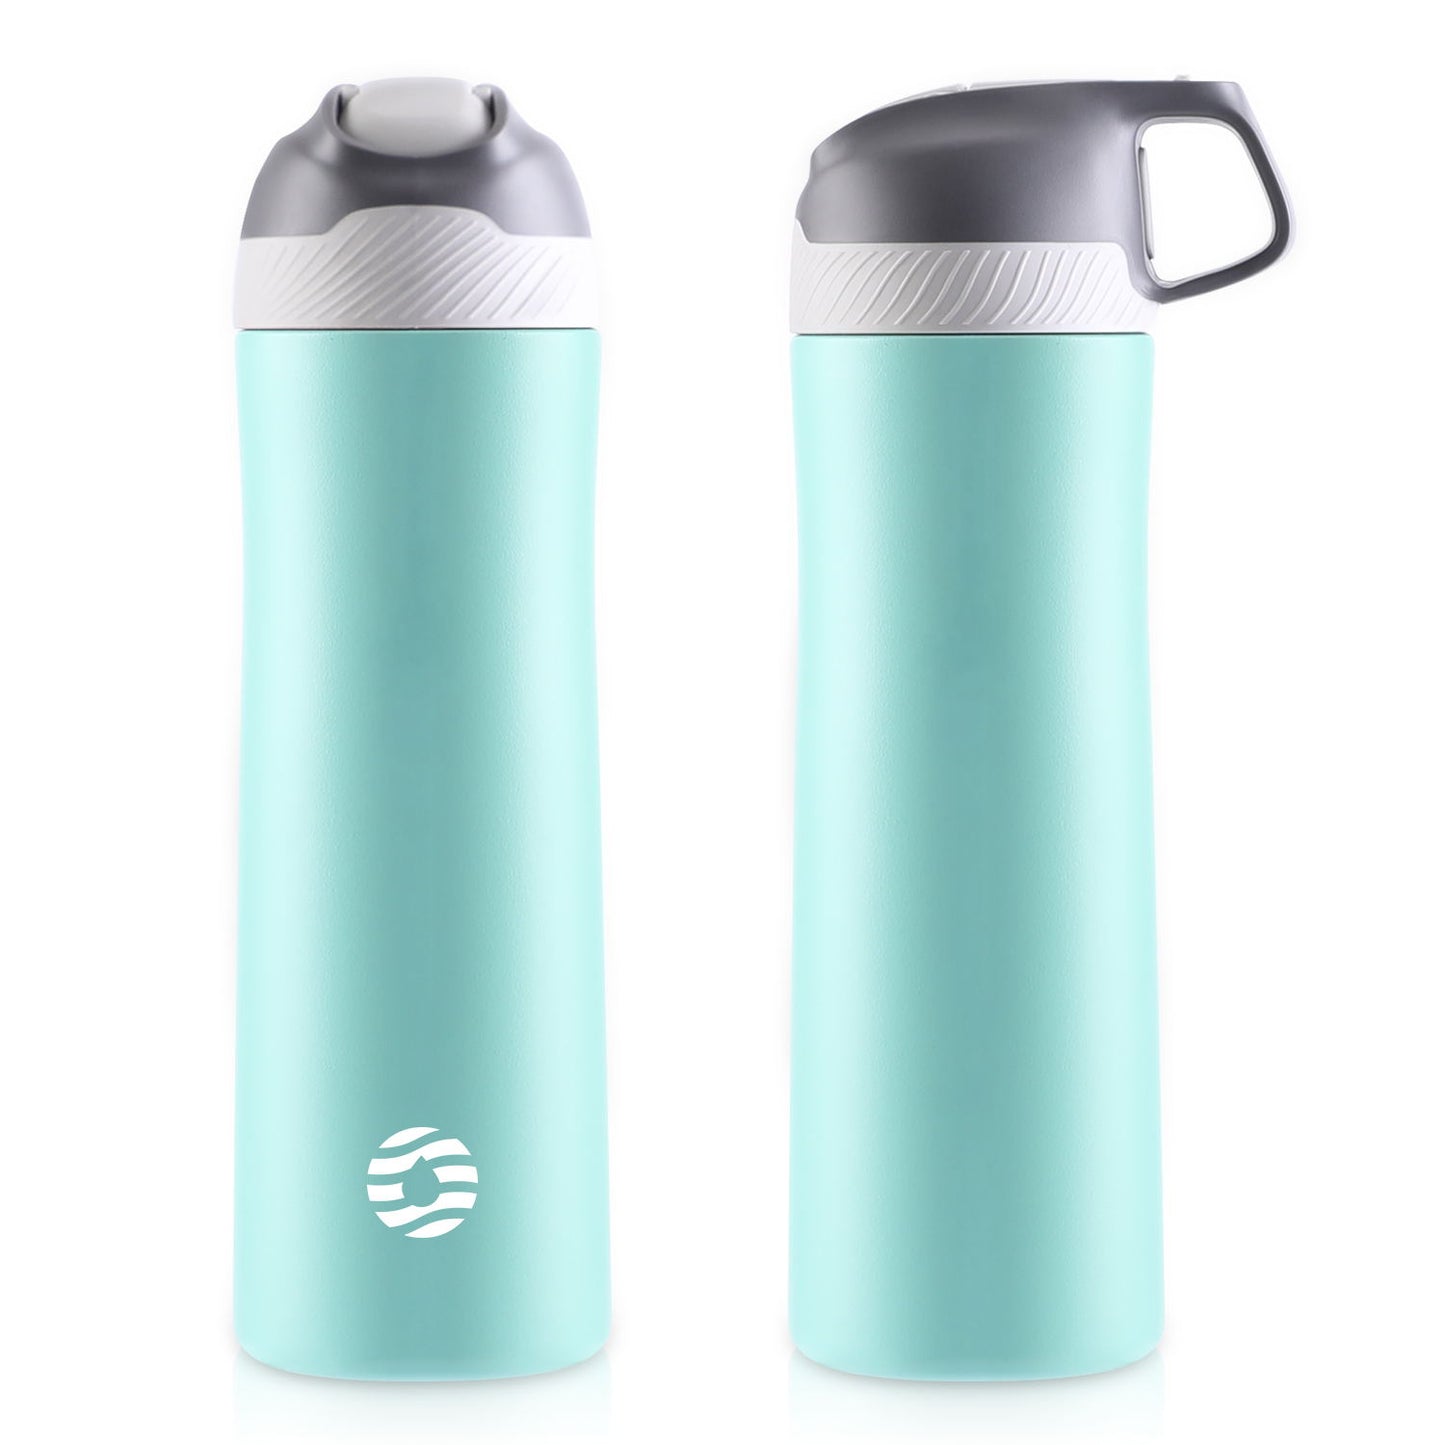 Das Bild zeigt zwei gruene Edelstahl-Thermosflaschen, eine mit geschlossenem und eine mit integriertem Griff im Deckel.